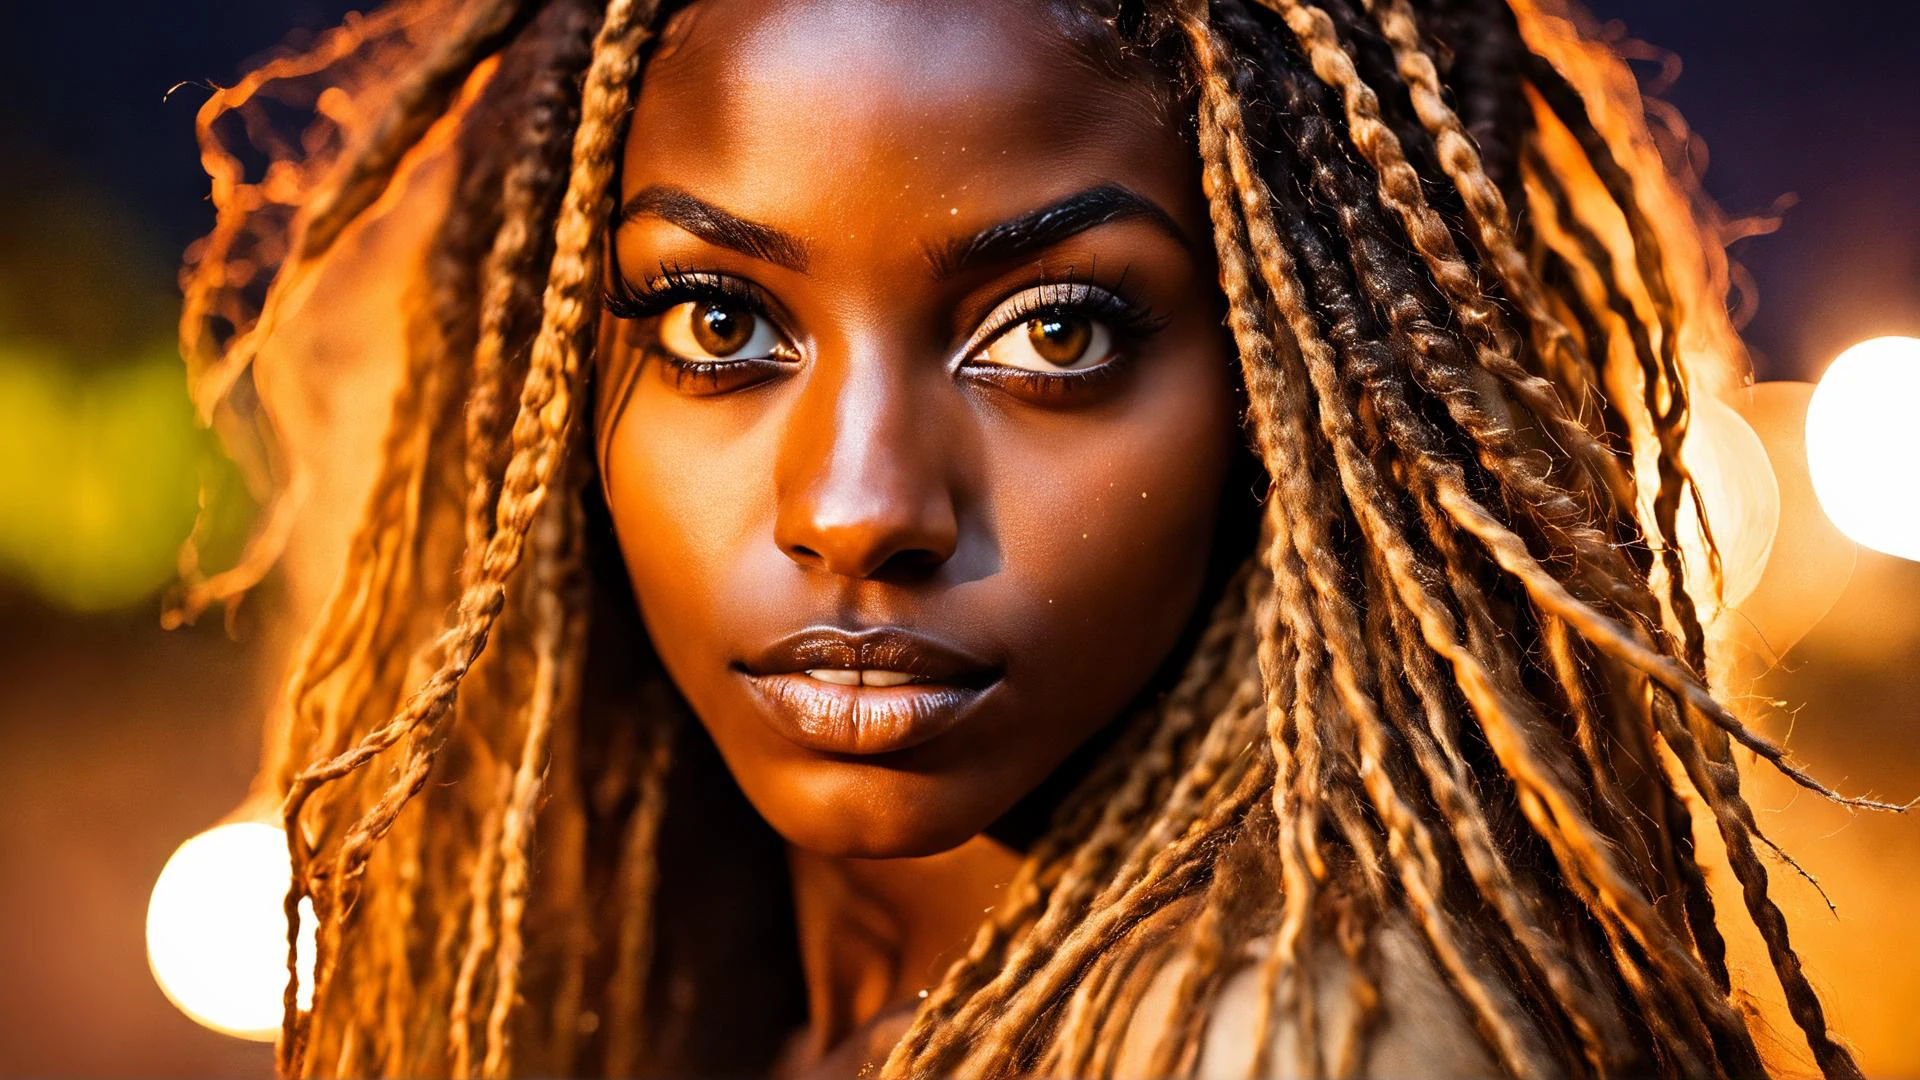 ภาพถ่ายการถ่ายภาพความเย้ายวนใจของดวงตาของสาวเคนยาอายุ 22 ปี, ใบหน้าที่มีรายละเอียด, ผมยาว, ใกล้ชิดกับดวงตา, รายละเอียดตา, ตอนกลางคืน